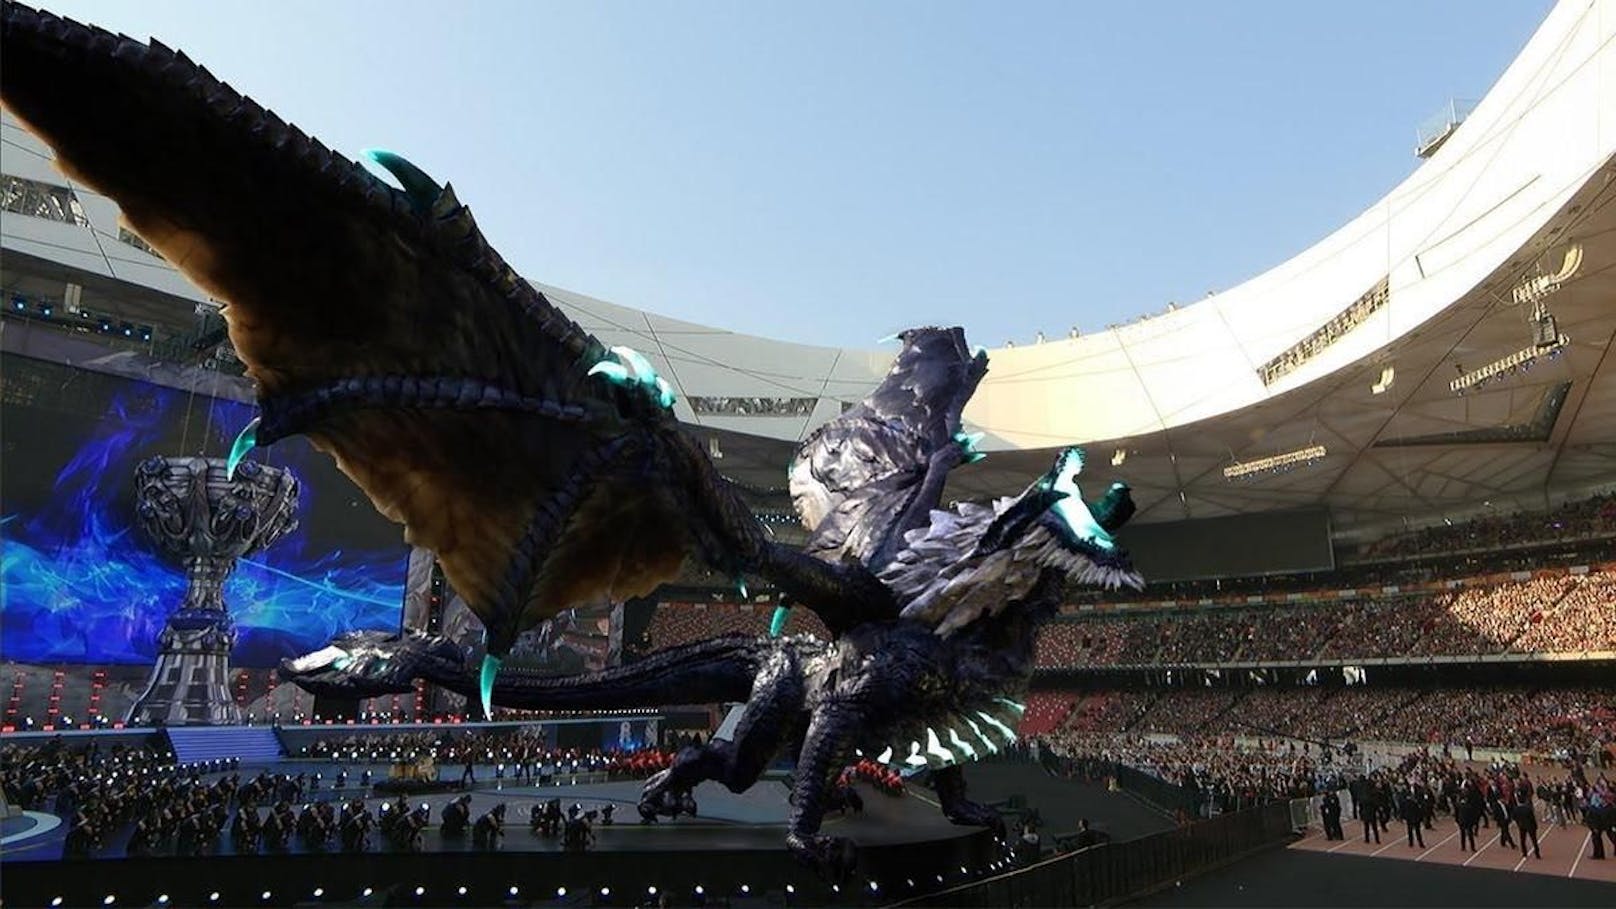 Eindrückliche Shows und Locations sind am Finalspiel eine Tradition. Hier 2017 mit einem riesigen Drachen in Beijing.